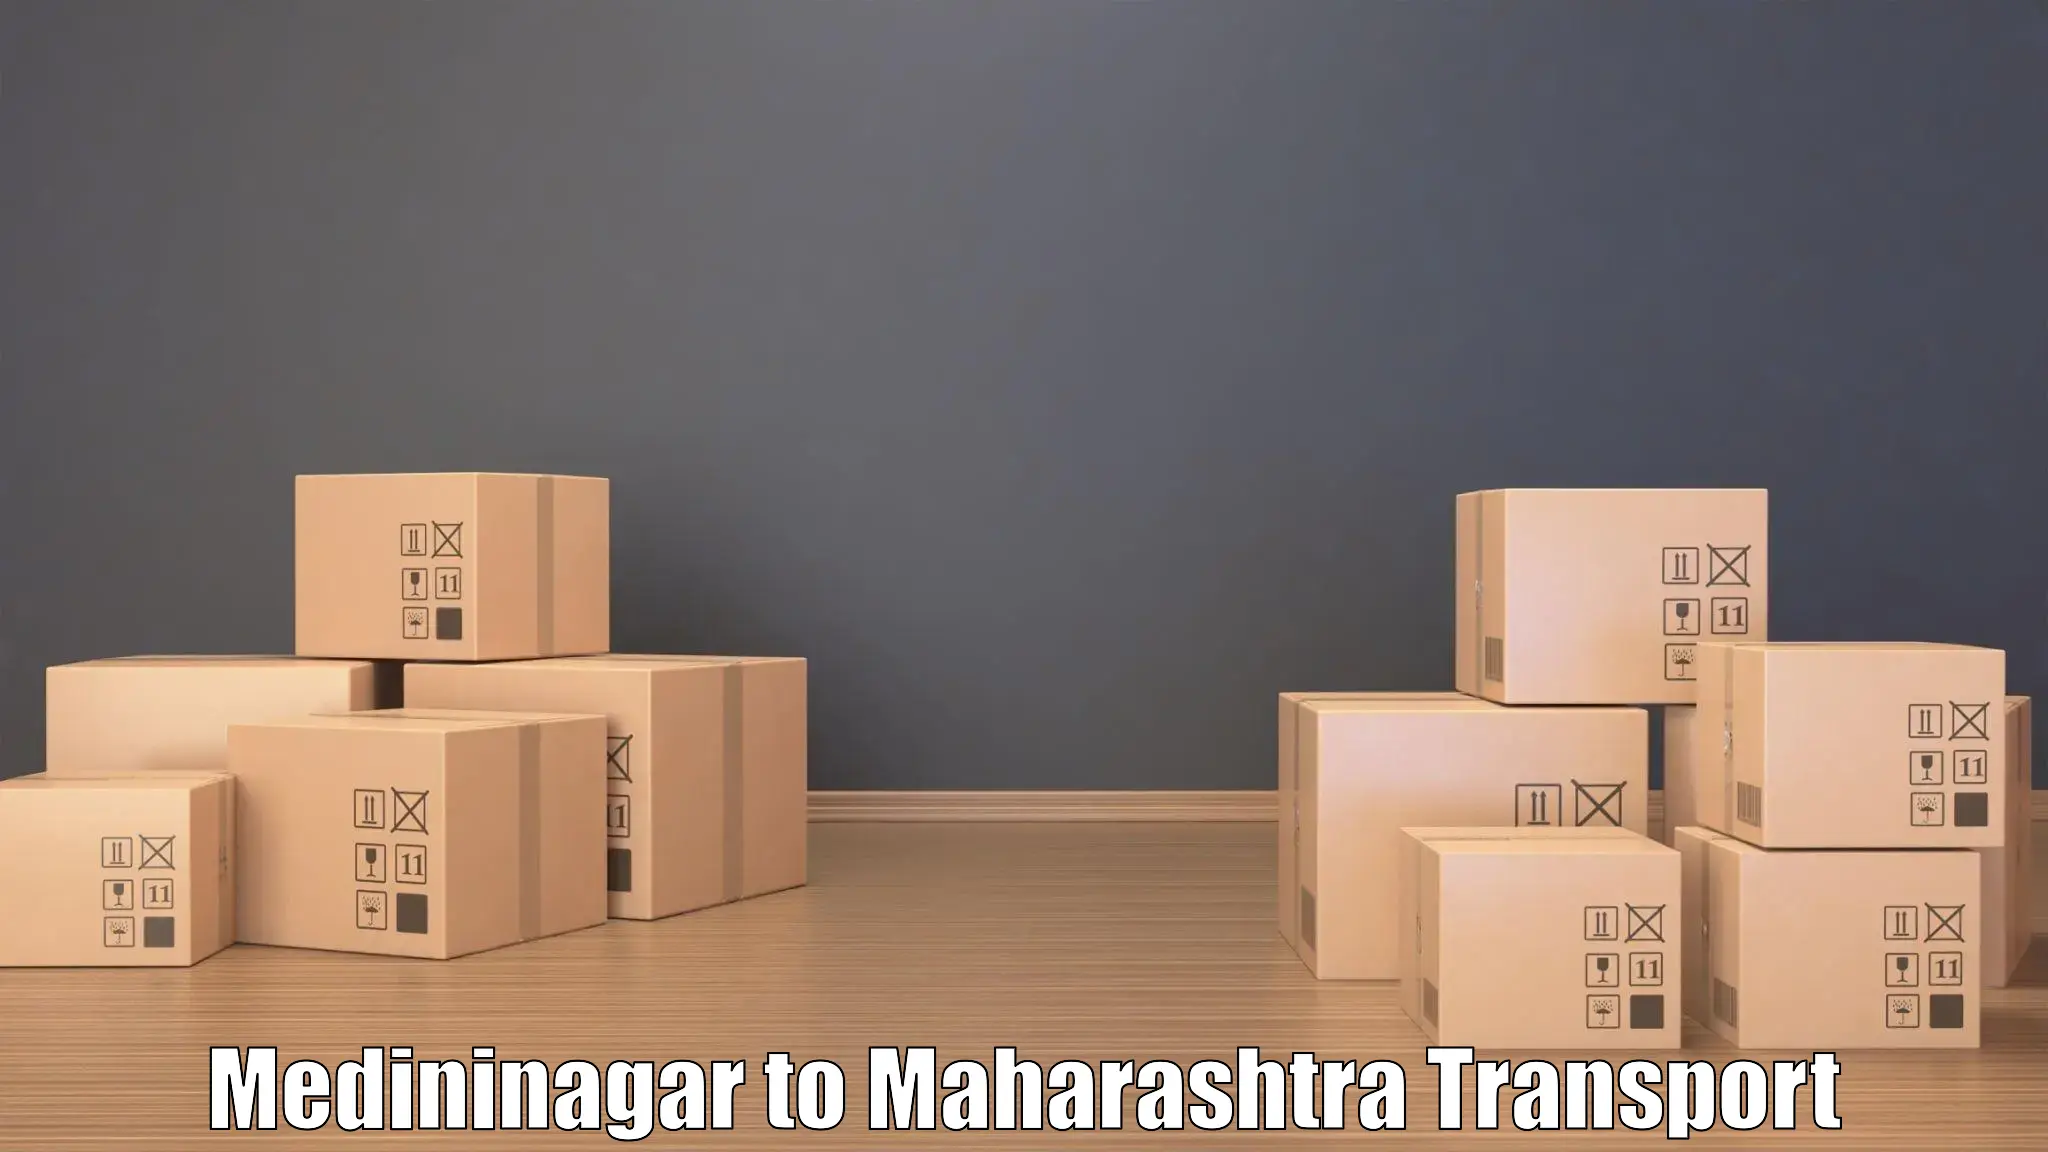 Interstate transport services Medininagar to Mehkar